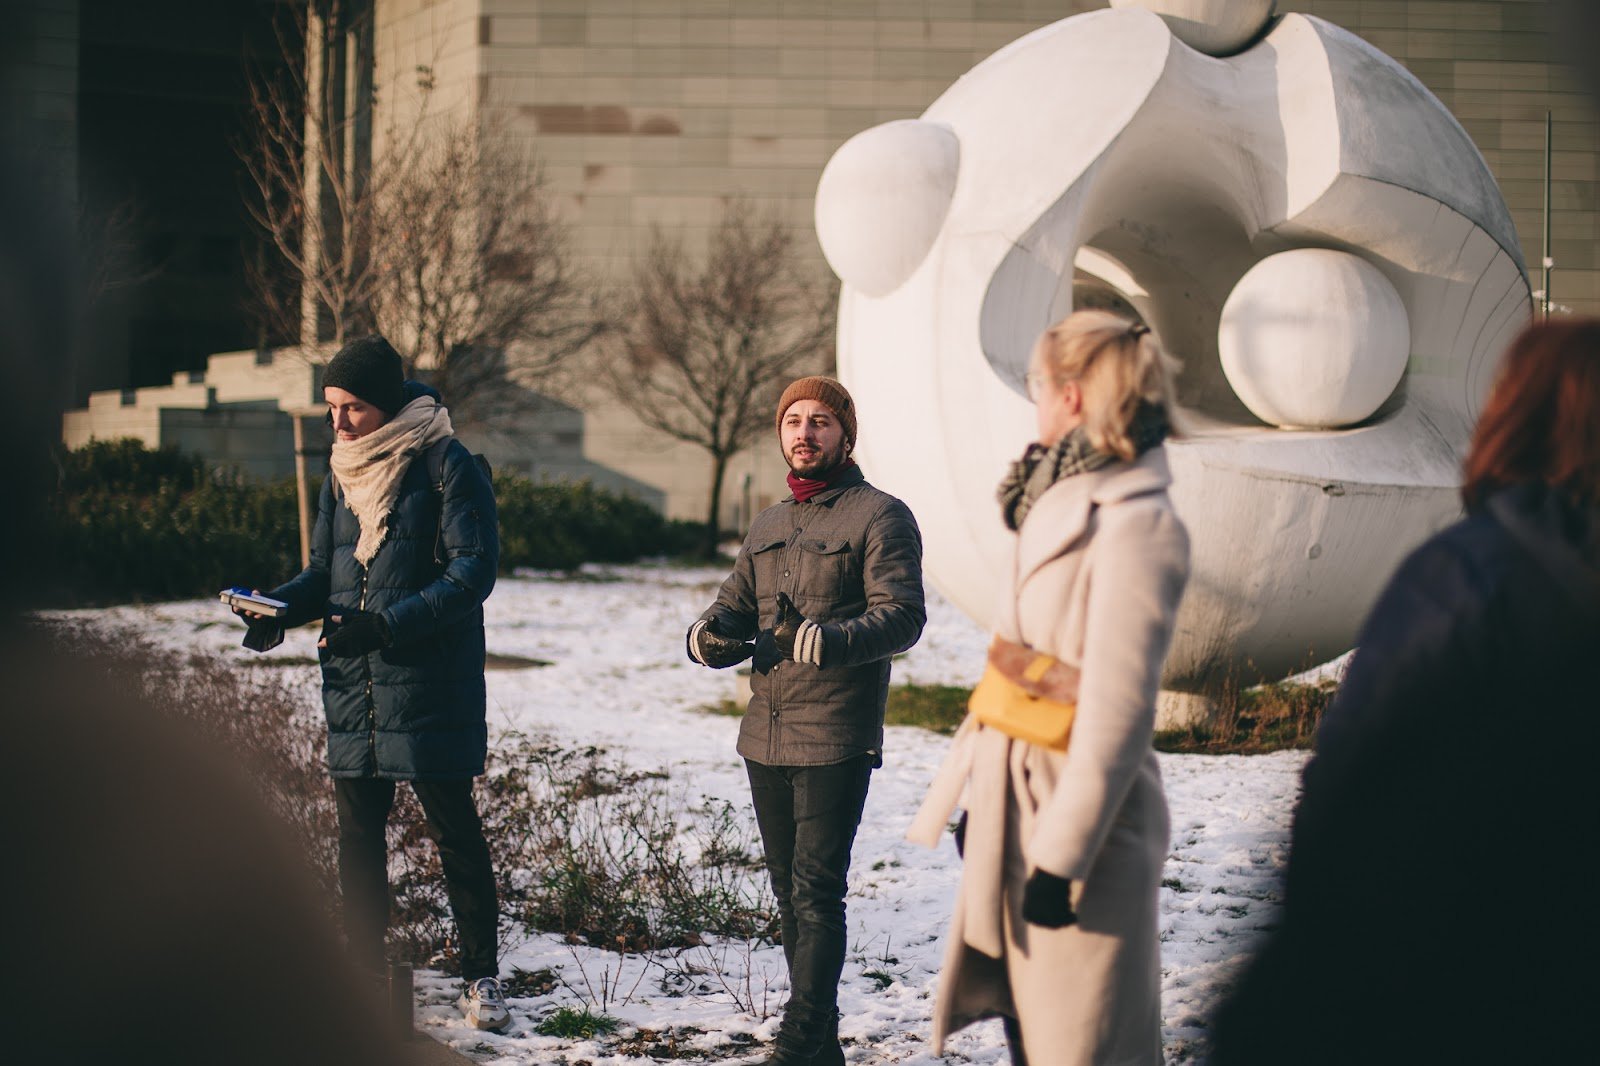 Grupa osób stoi pod rzeźbą atomu w zimowy dzień. Na ziemi widoczny śnieg, a ludzie poubierani są w ciepłe ubrania. 